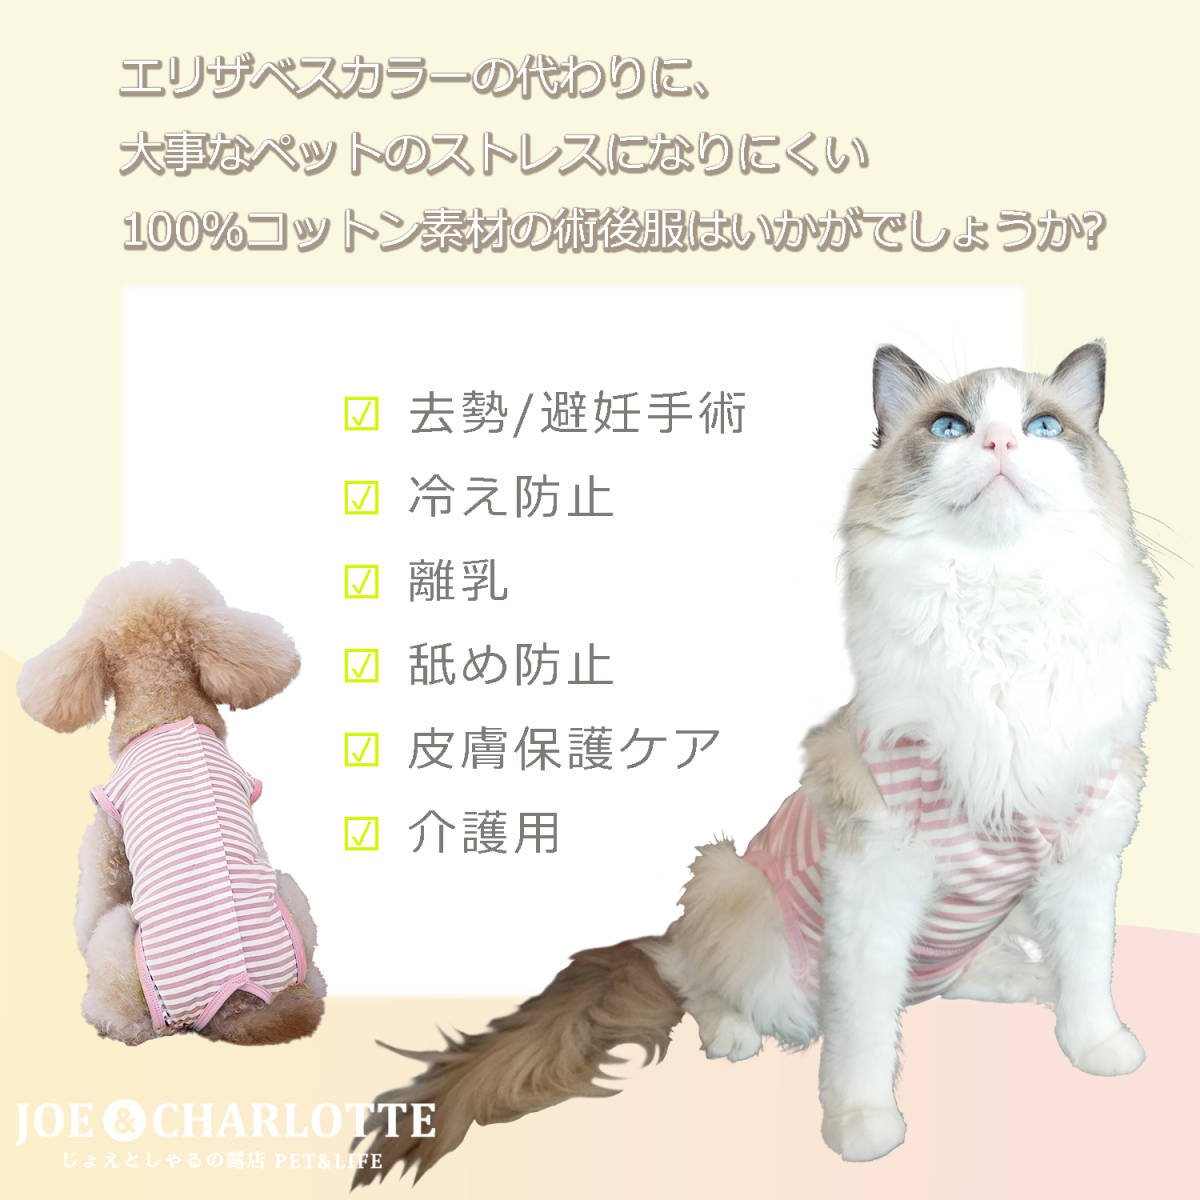 【ピンク2XL】猫犬術後服 ウェア 雄雌 エリザベスカラーウェア 舐め防止 皮膚保護